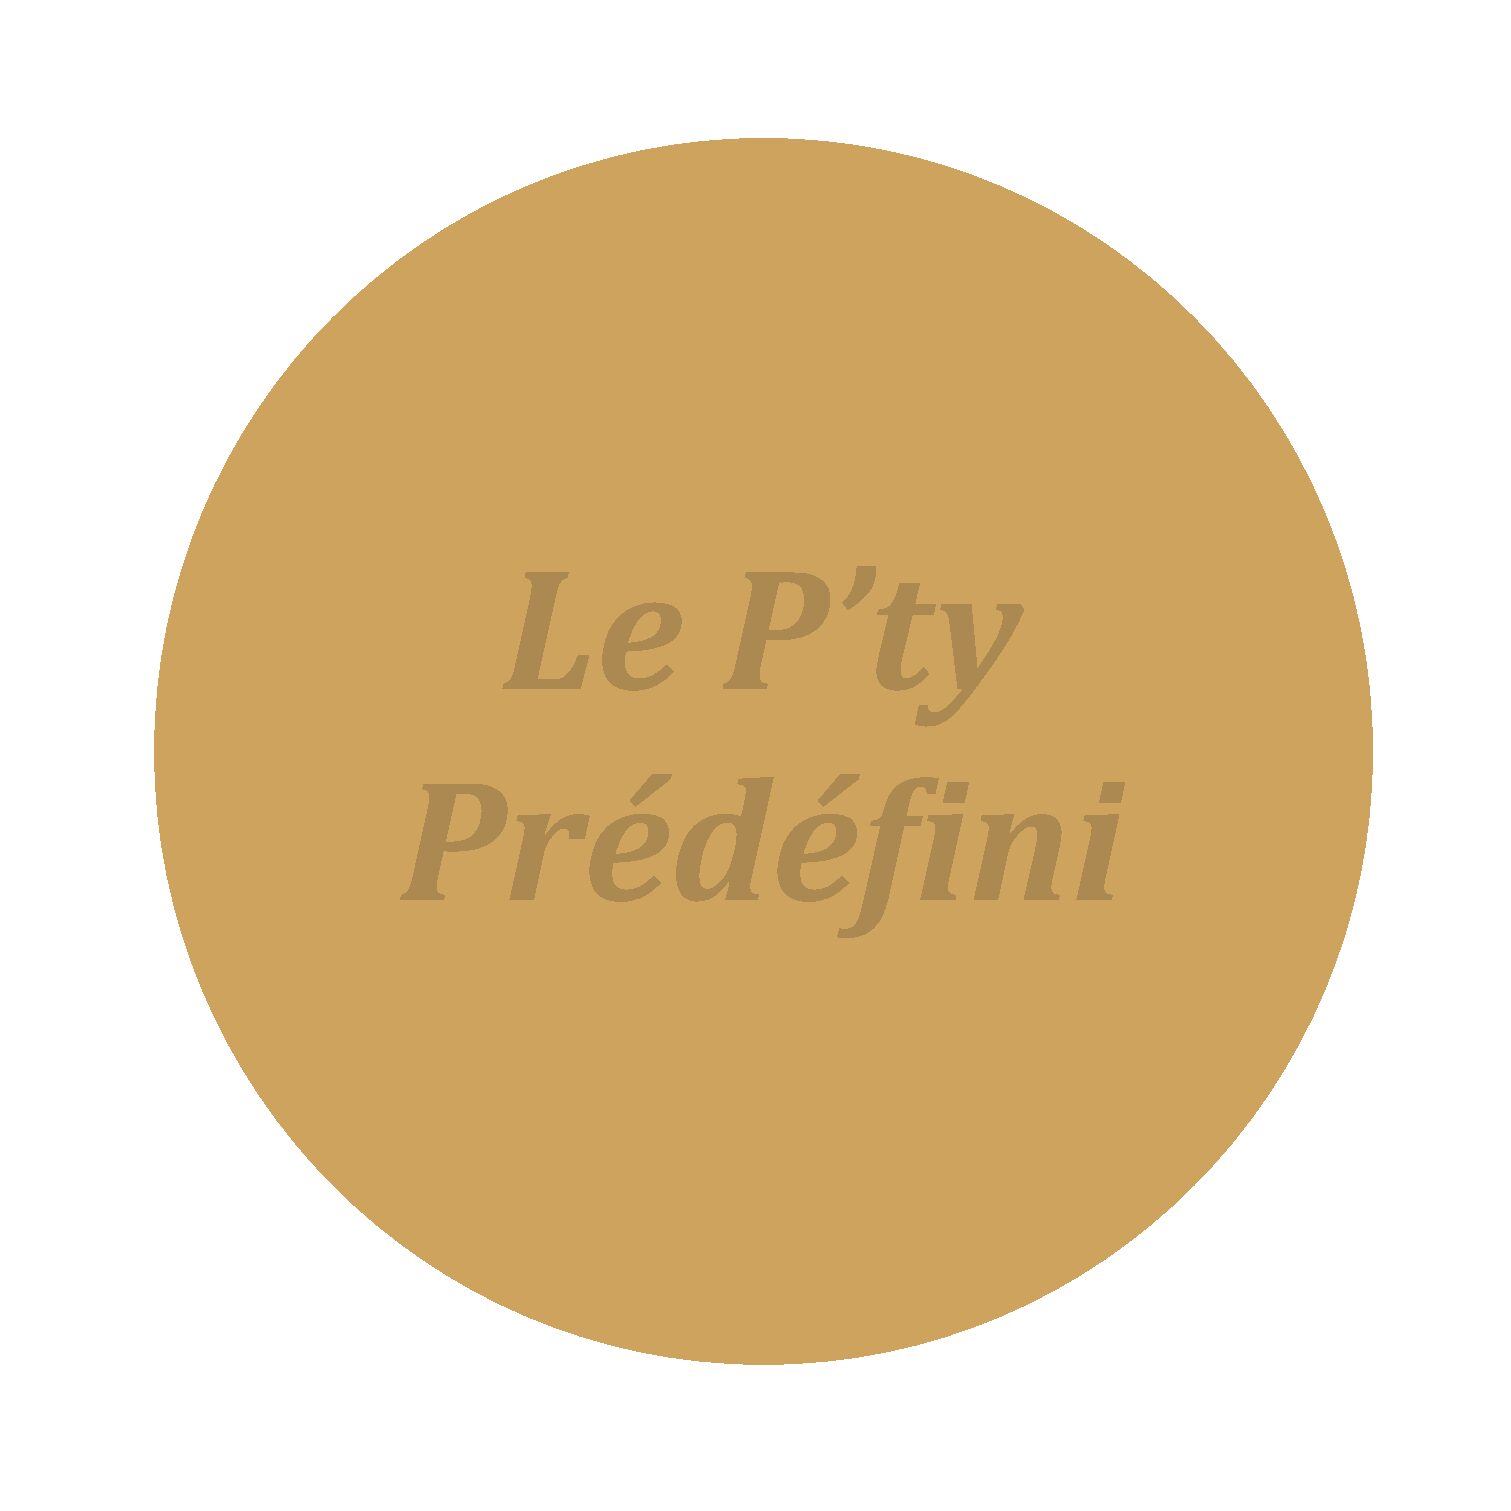 Le P’ty Prédéfini